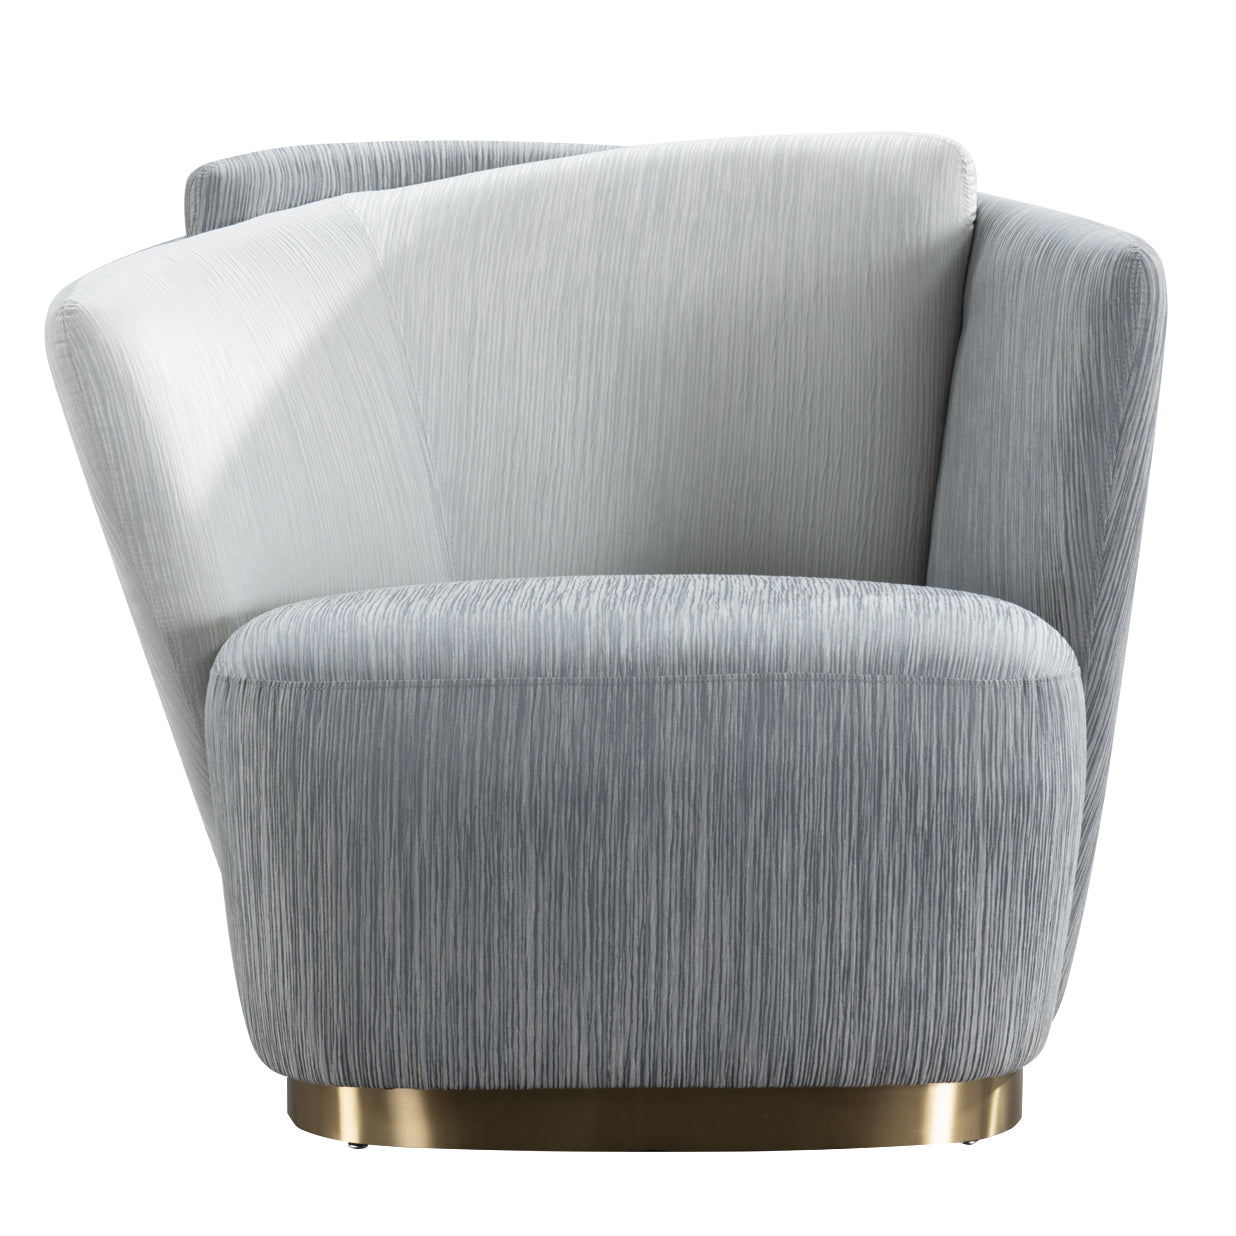 Napoleon Chair - Future Classics Furniture